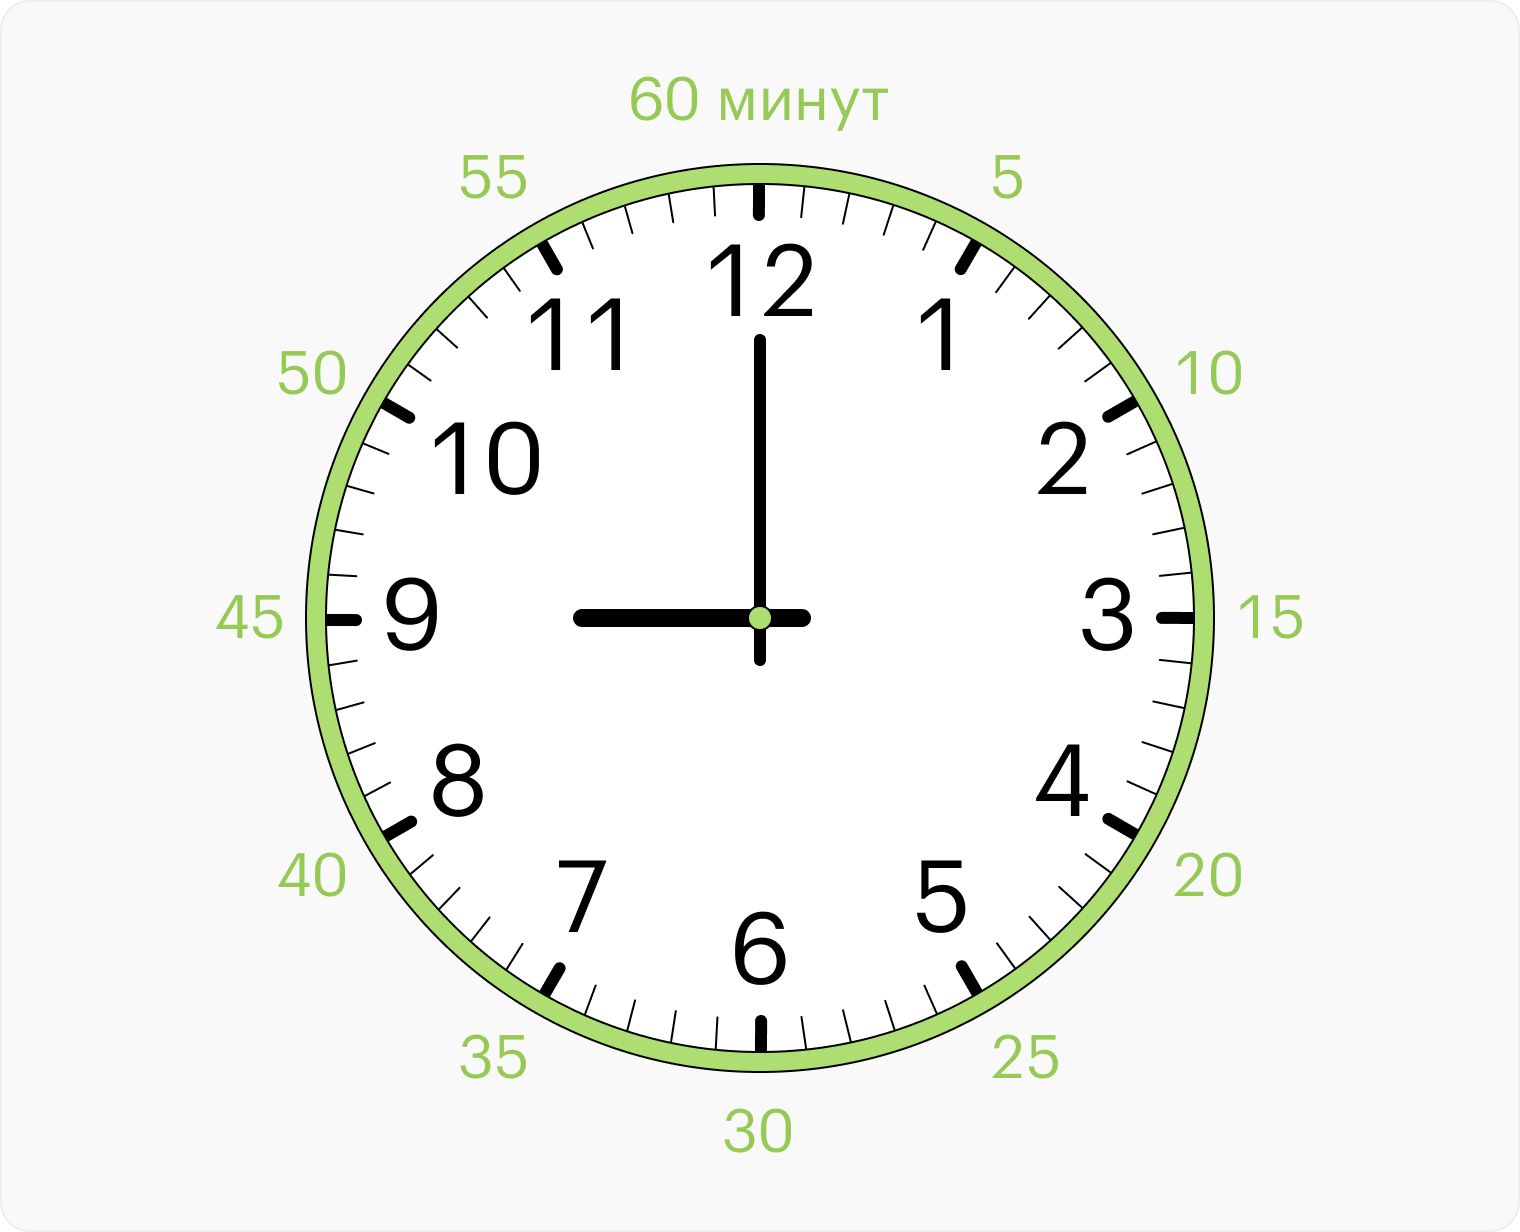 Нарисуйте на циферблате напротив обозначений часов обозначения минут. Пройдите с ребенком круг циферблата до 60 минут, то есть полный час, прибавляя каждый раз по пять